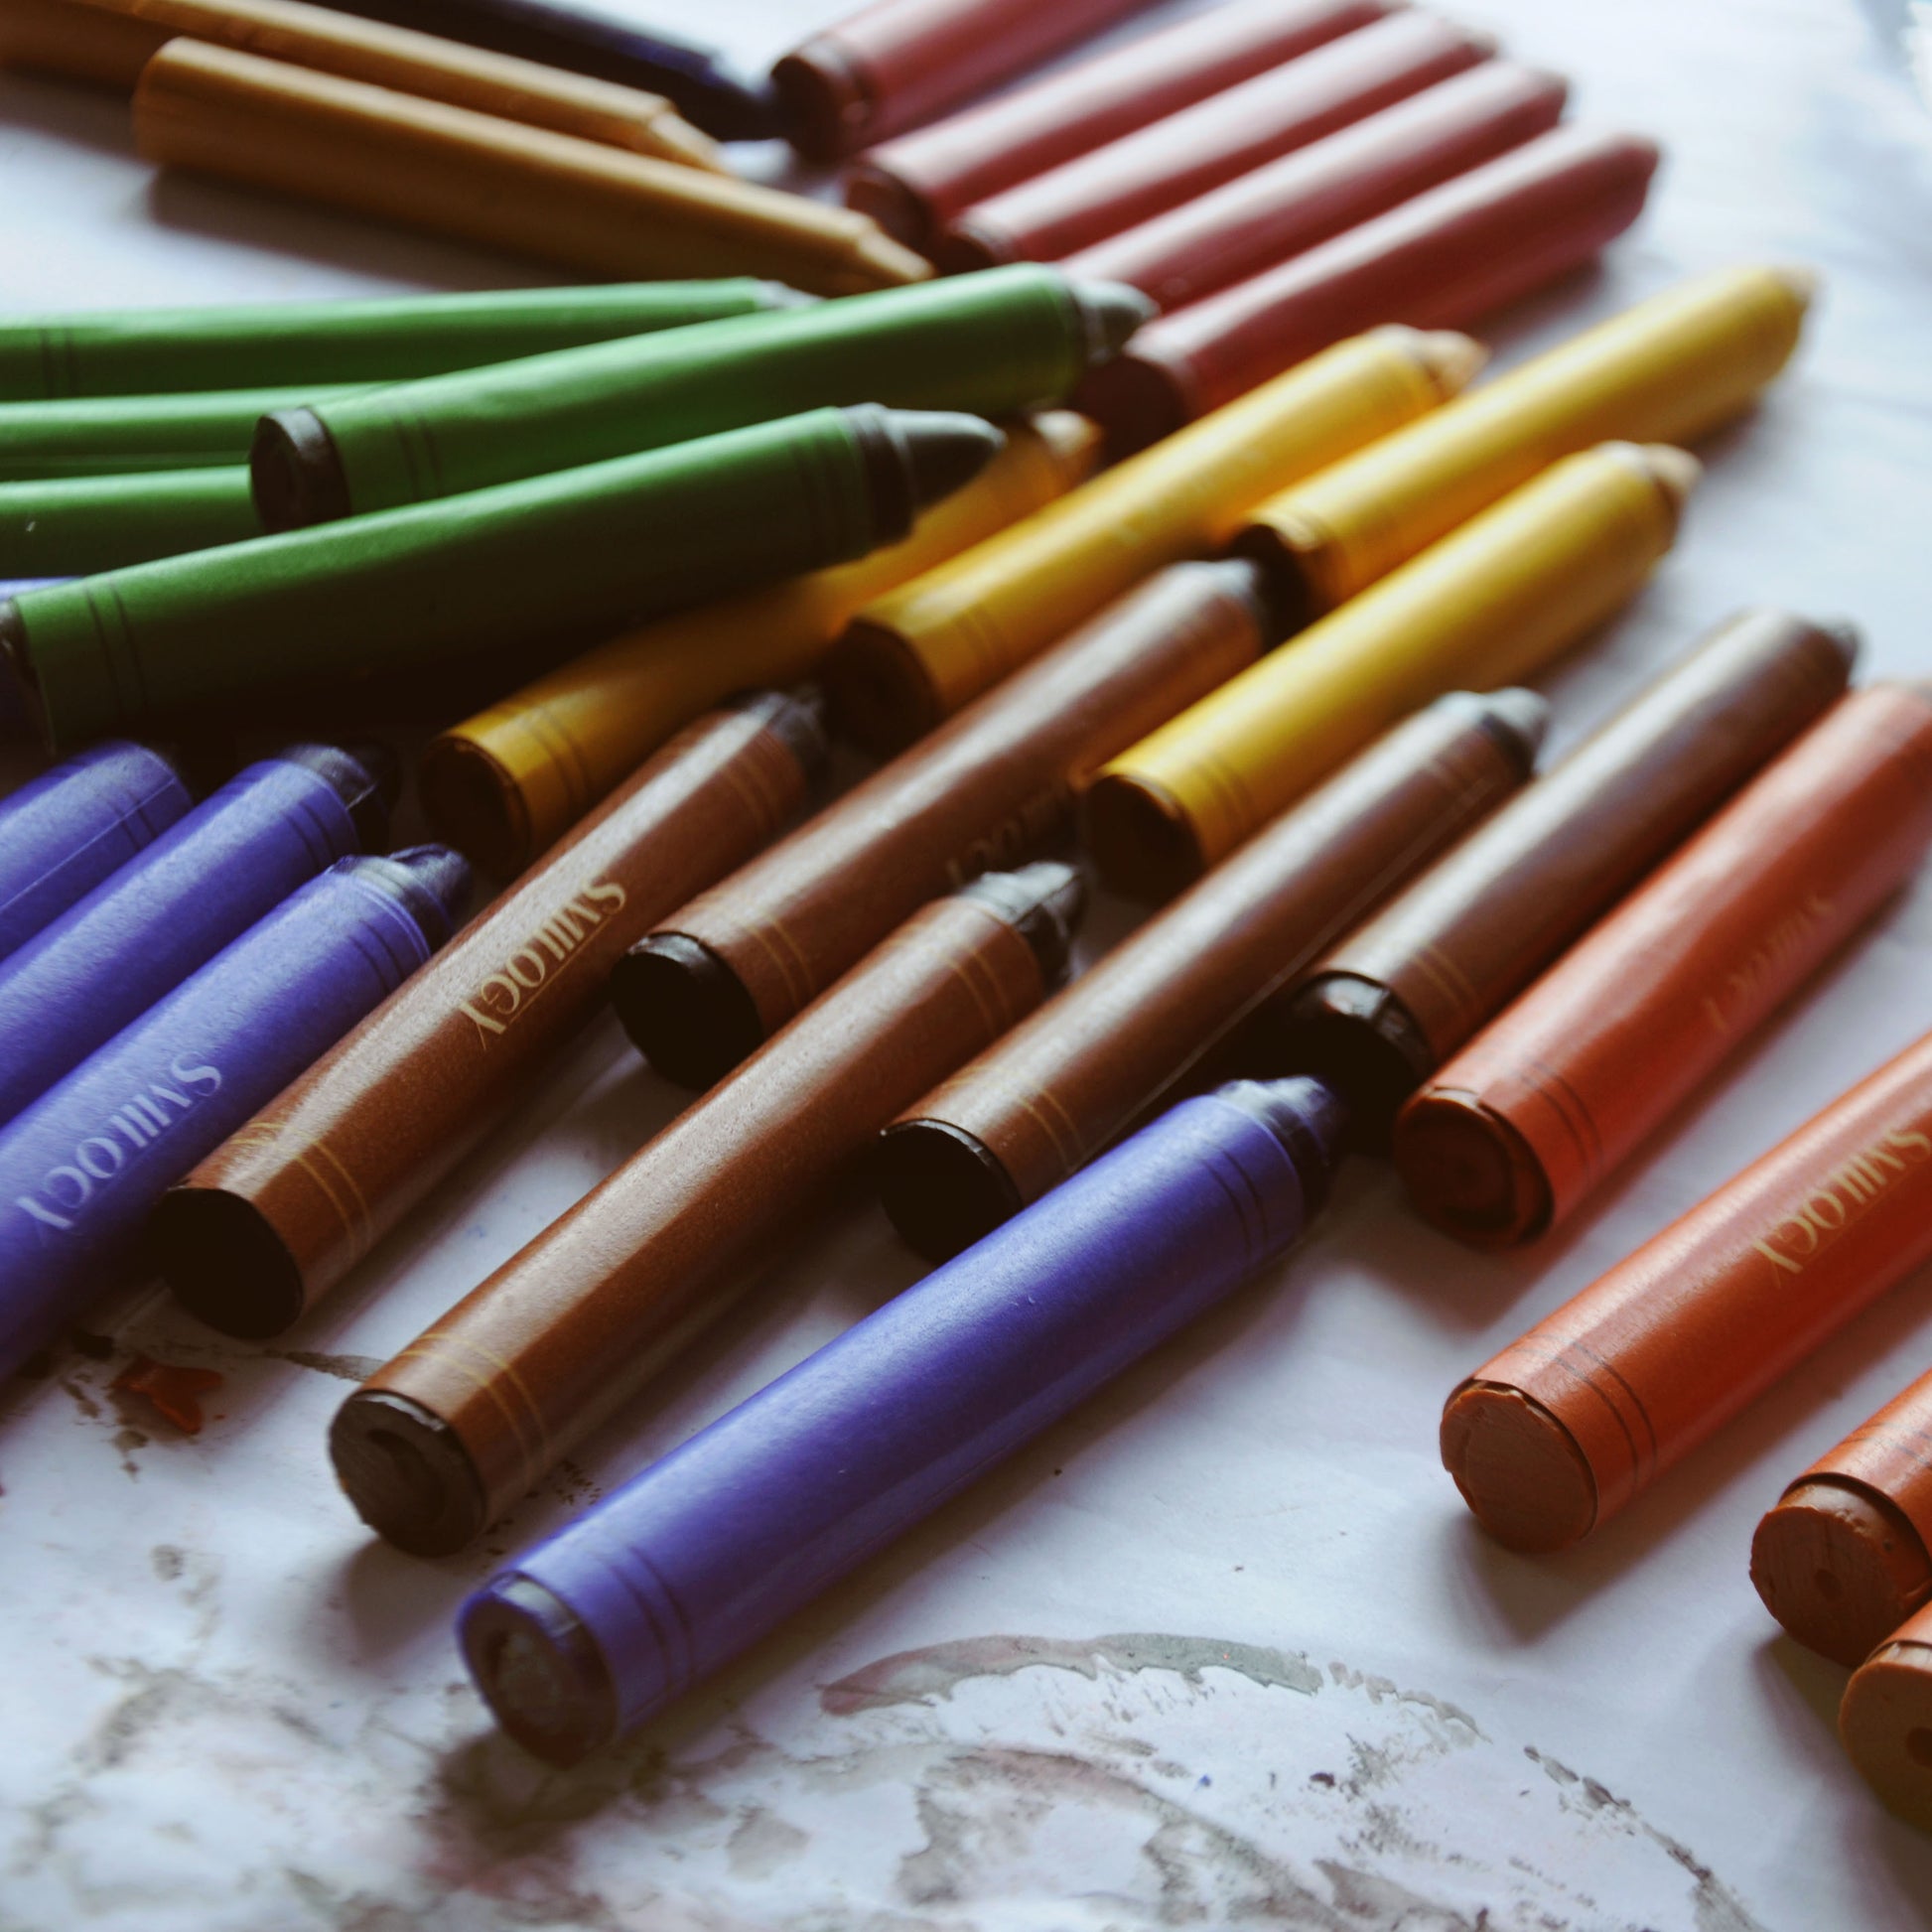 6-Piece Standard Natural & Non-Toxic Handmade Organic Beeswax Crayons- –  Smilogy Organic Beeswax Crayons